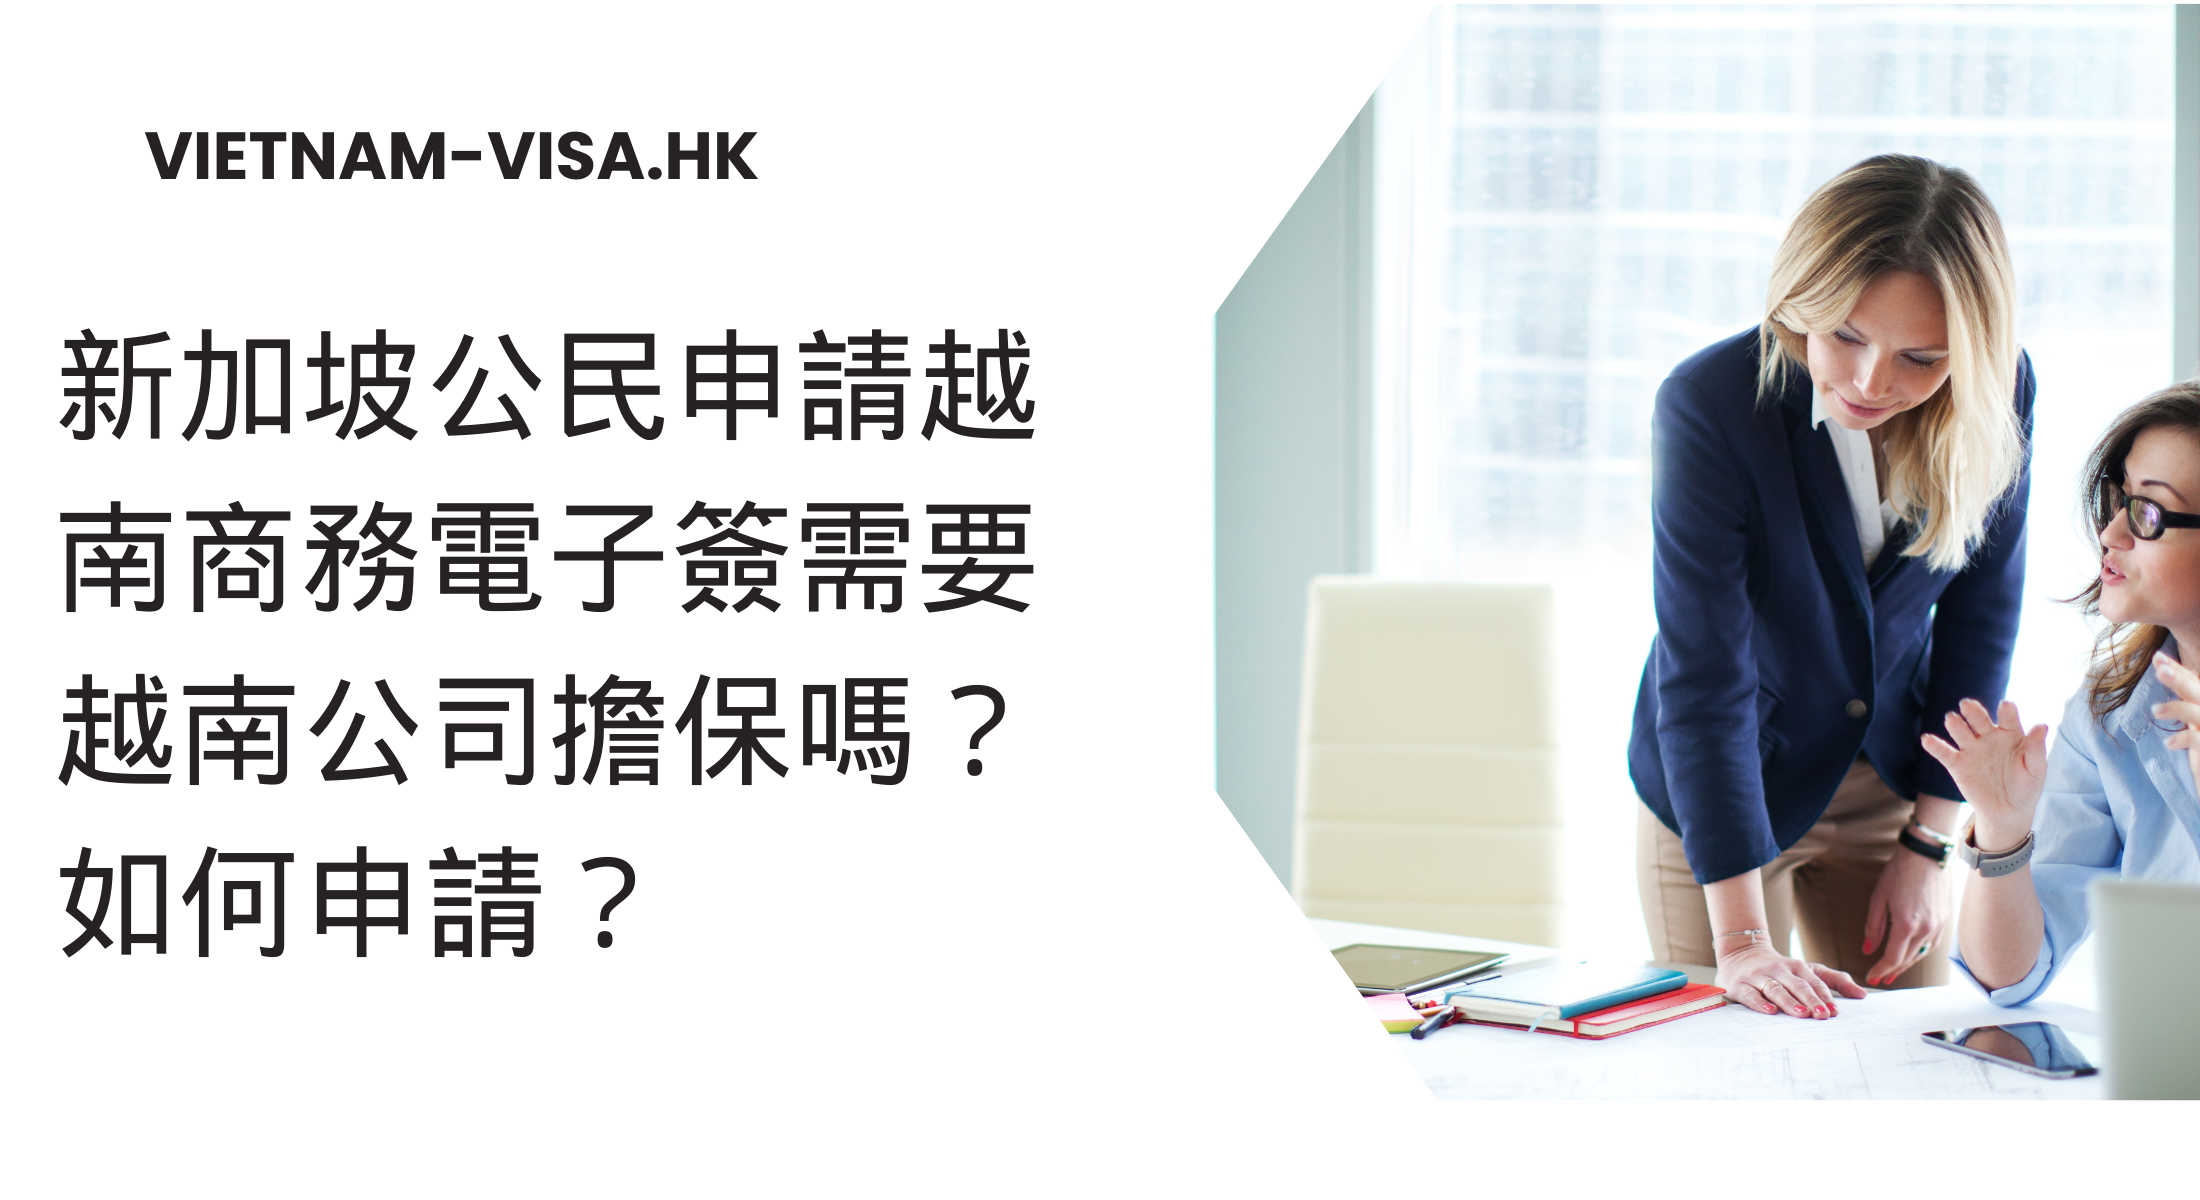 新加坡公民申請越南商務電子簽需要越南公司擔保嗎？ 如何申請？